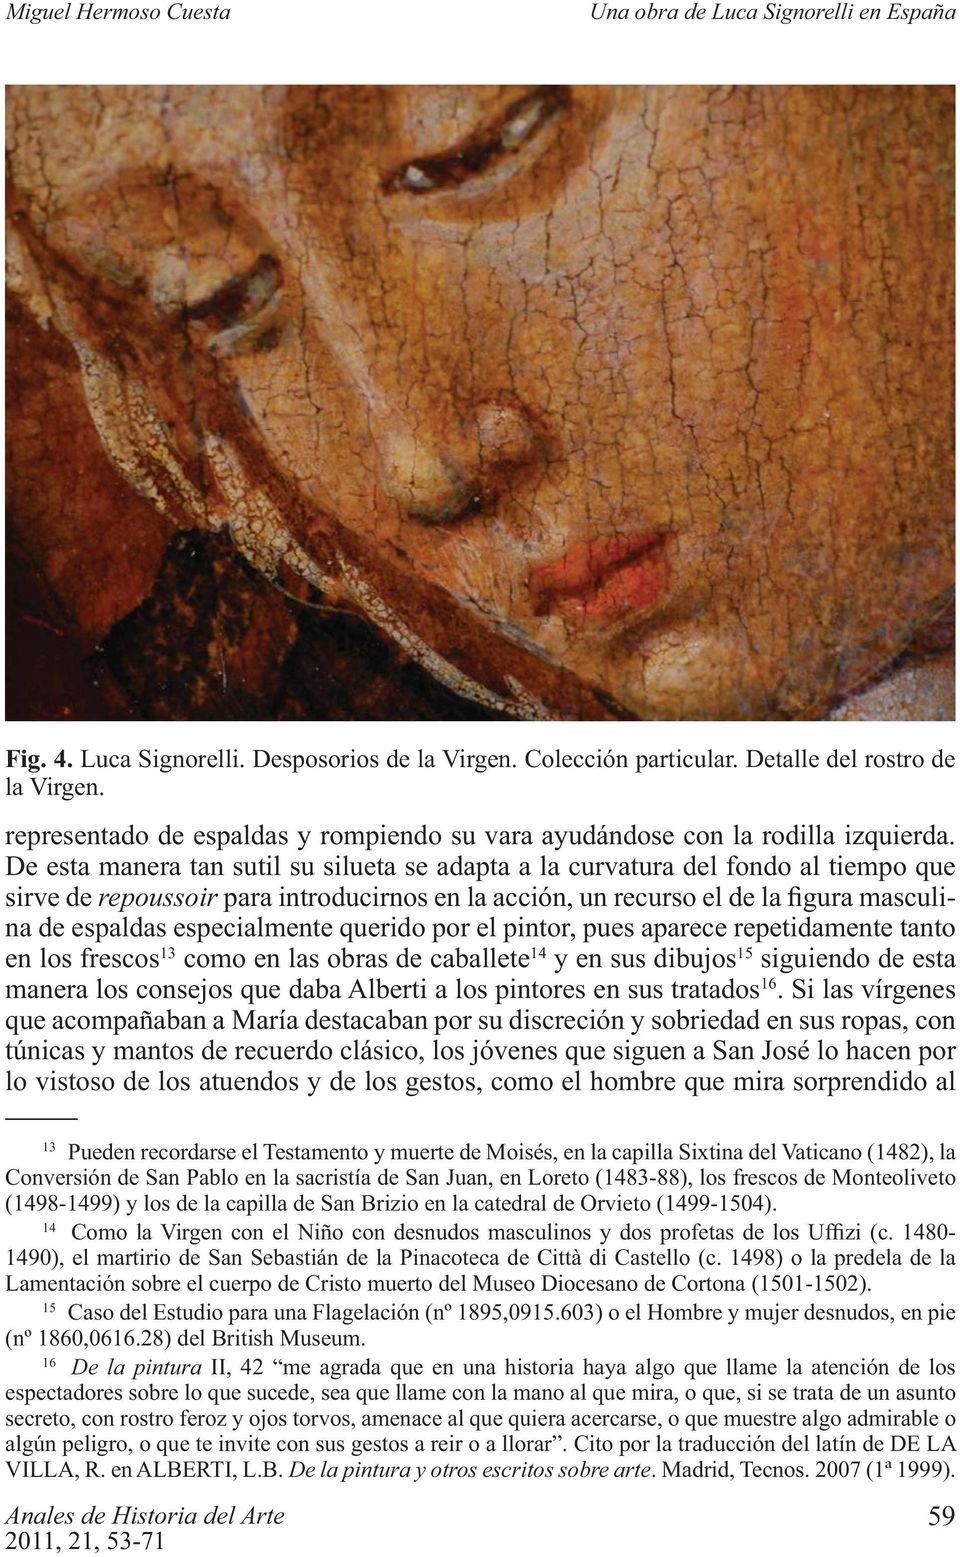 frescos 13 como en las obras de caballete 14 y en sus dibujos 15 siguiendo de esta manera los consejos que daba Alberti a los pintores en sus tratados 16.